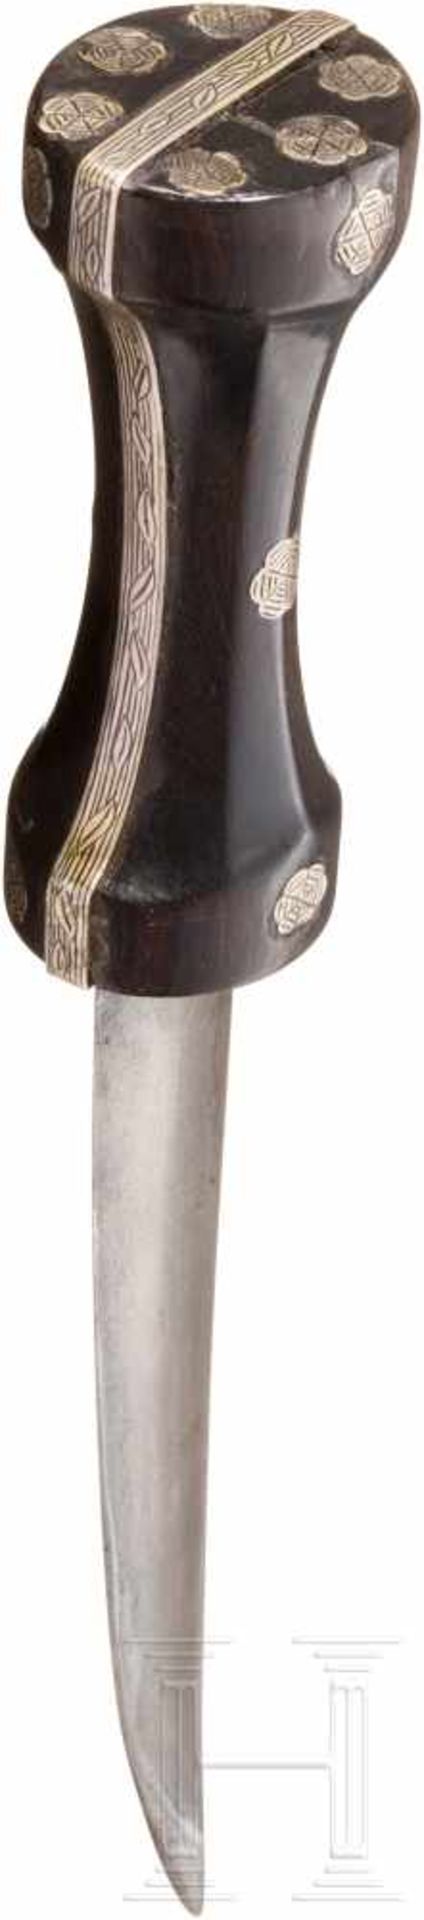 Silbermontierter Kandschar, osmanisch, 2. Hälfte 17. Jhdt.Zweischneidige, leicht gekrümmte Klinge - Bild 3 aus 5